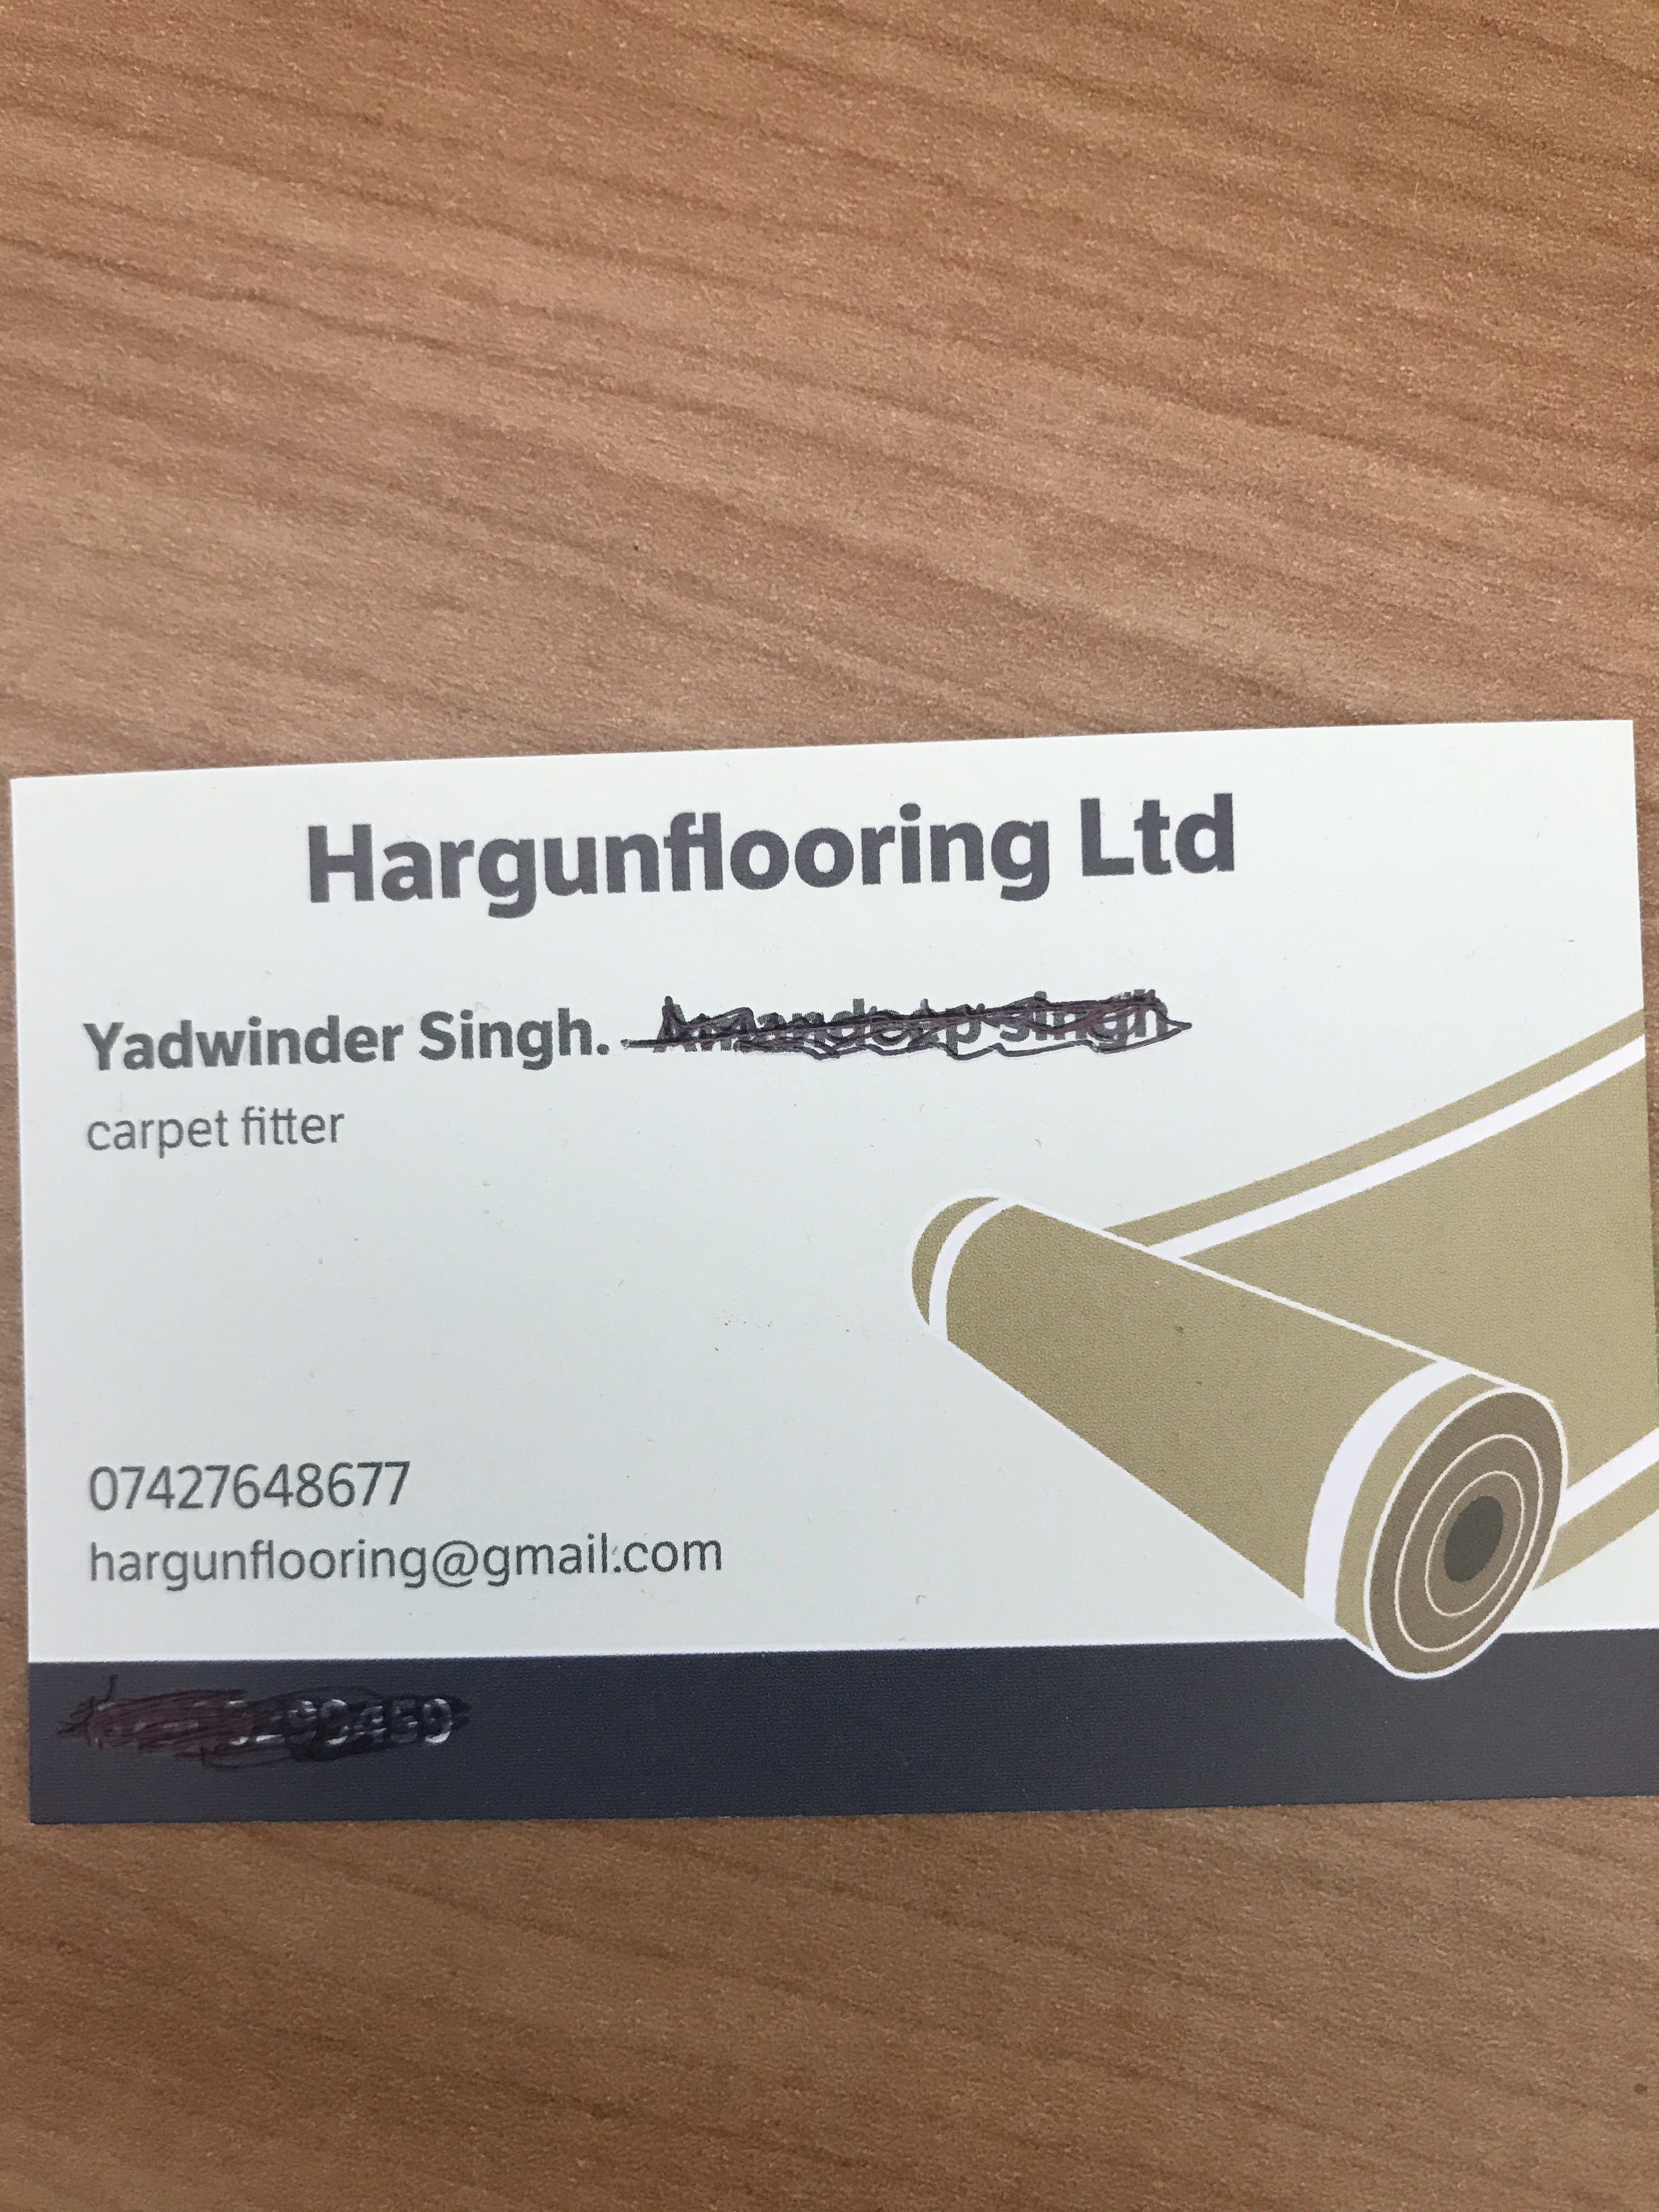 Hargun Flooring Ltd